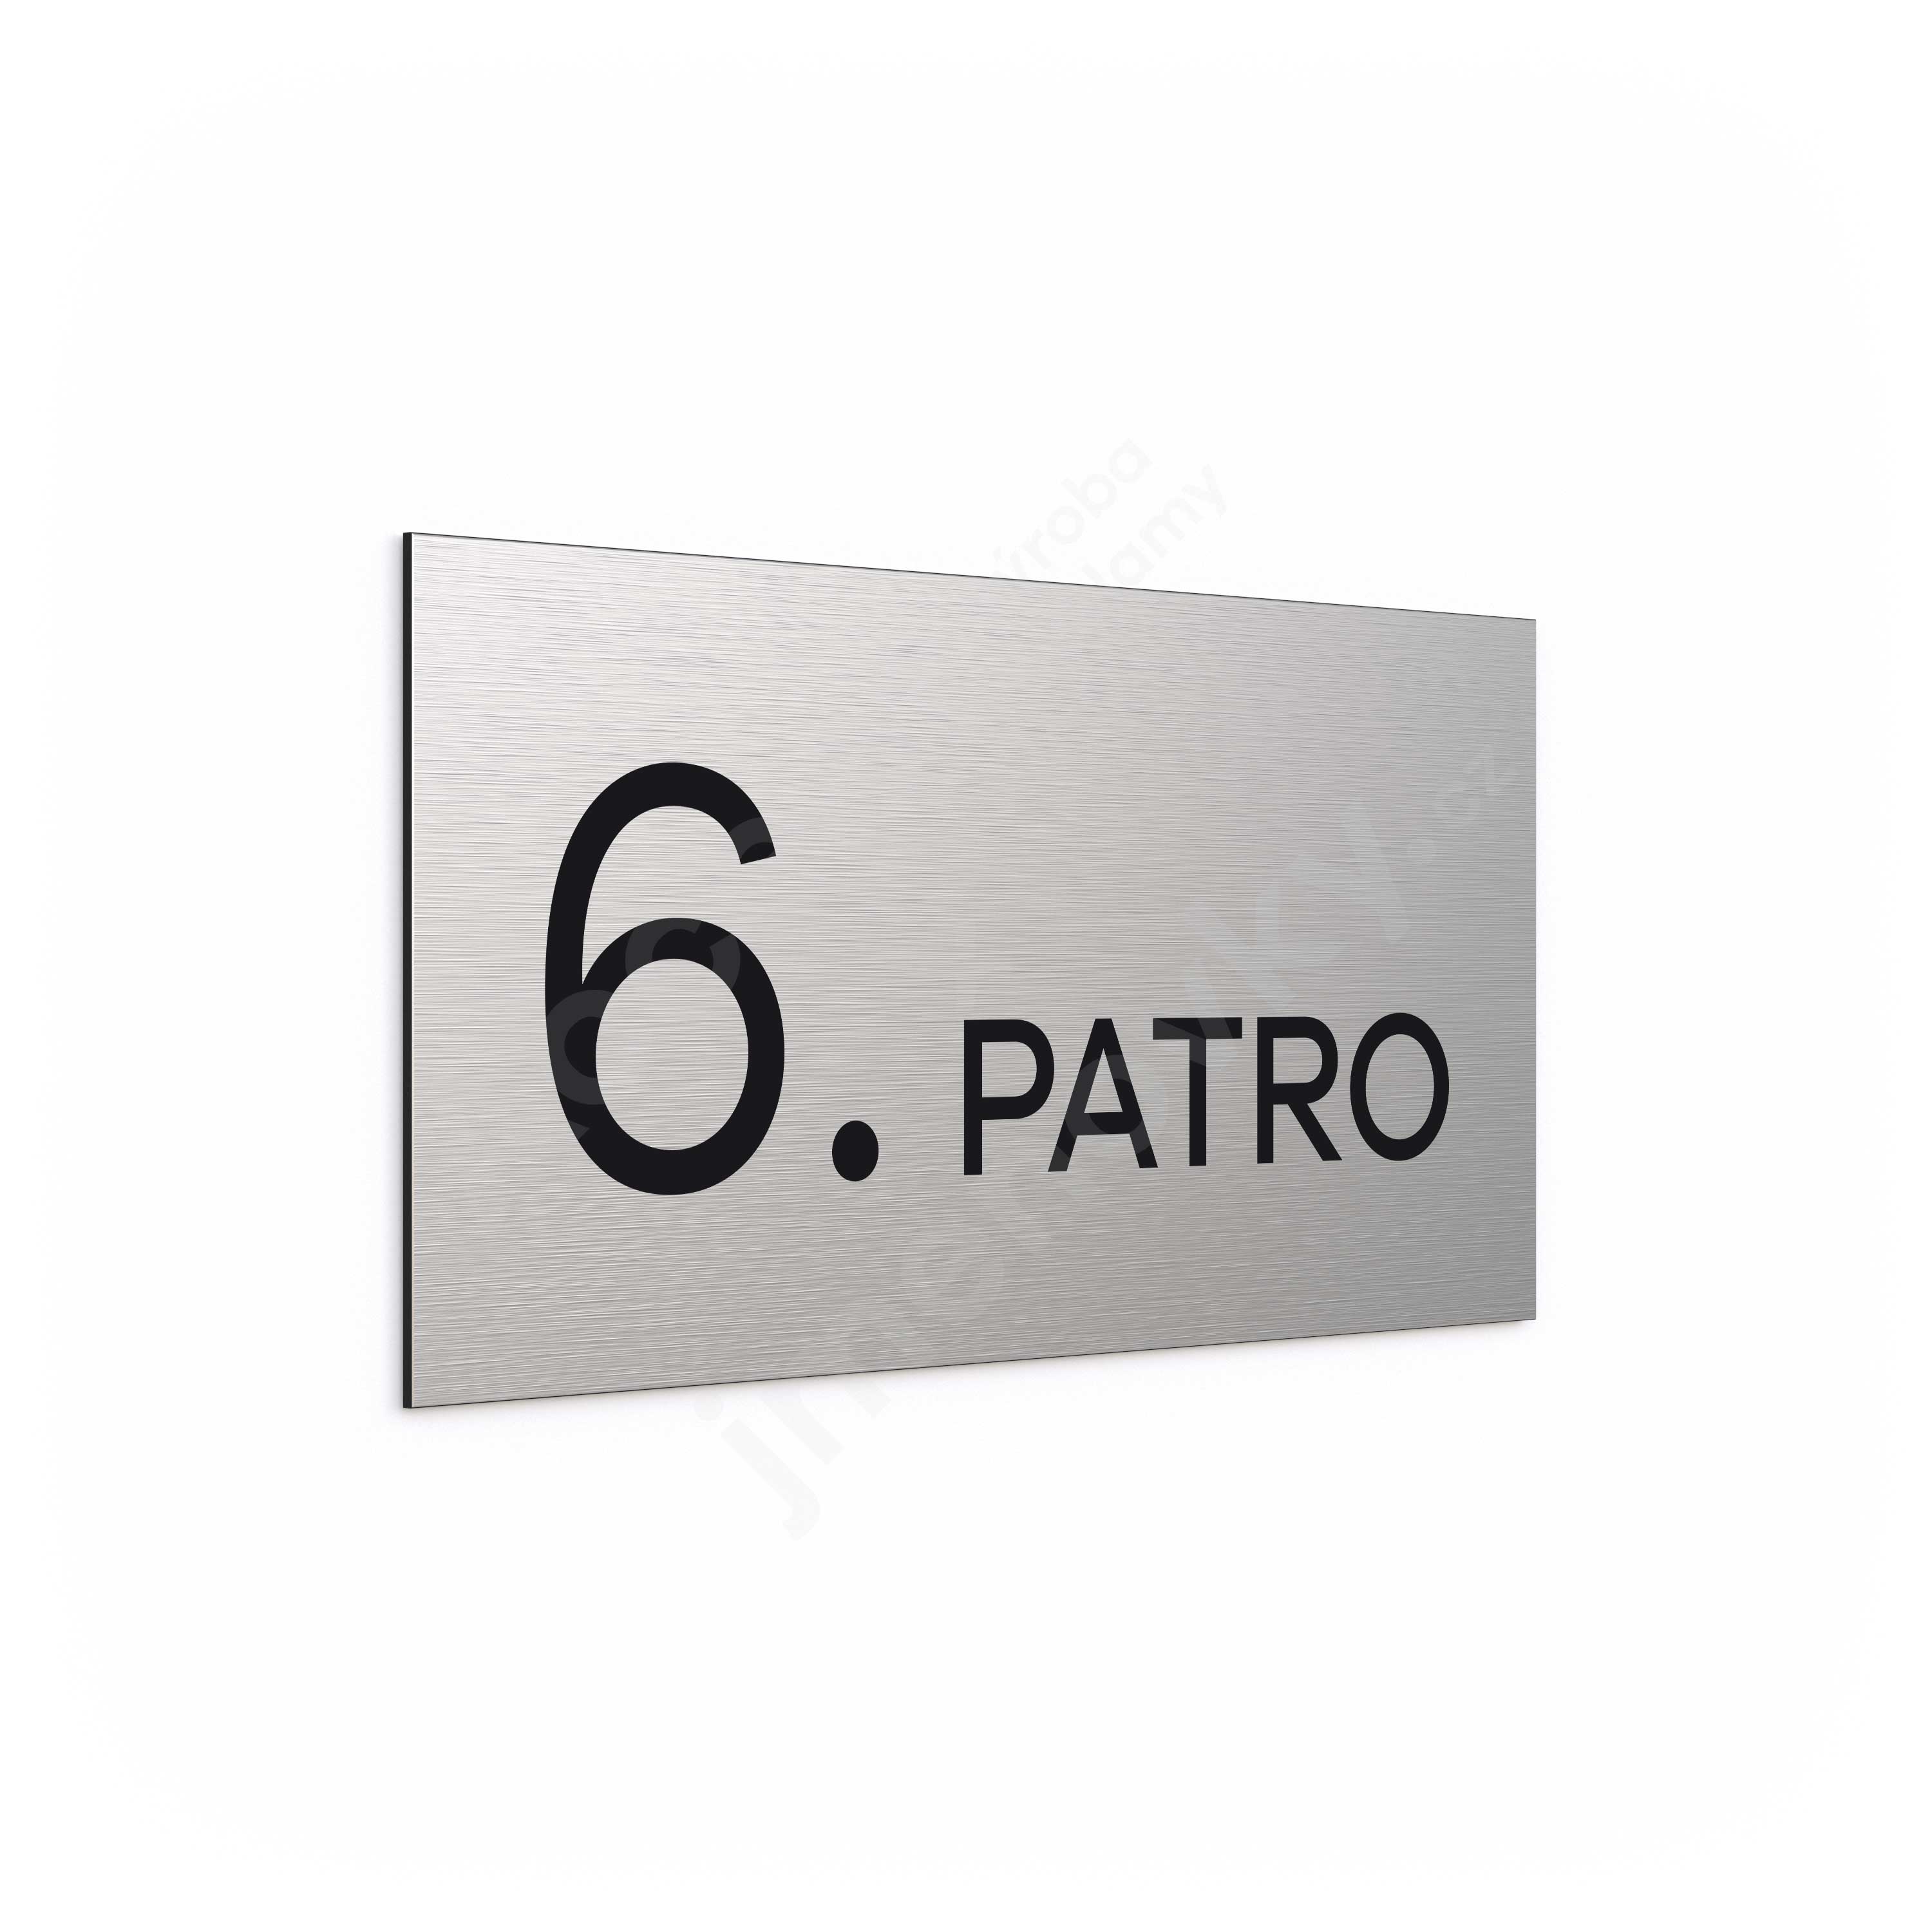 Označení podlaží "6. PATRO" - stříbrná tabulka - černý popis